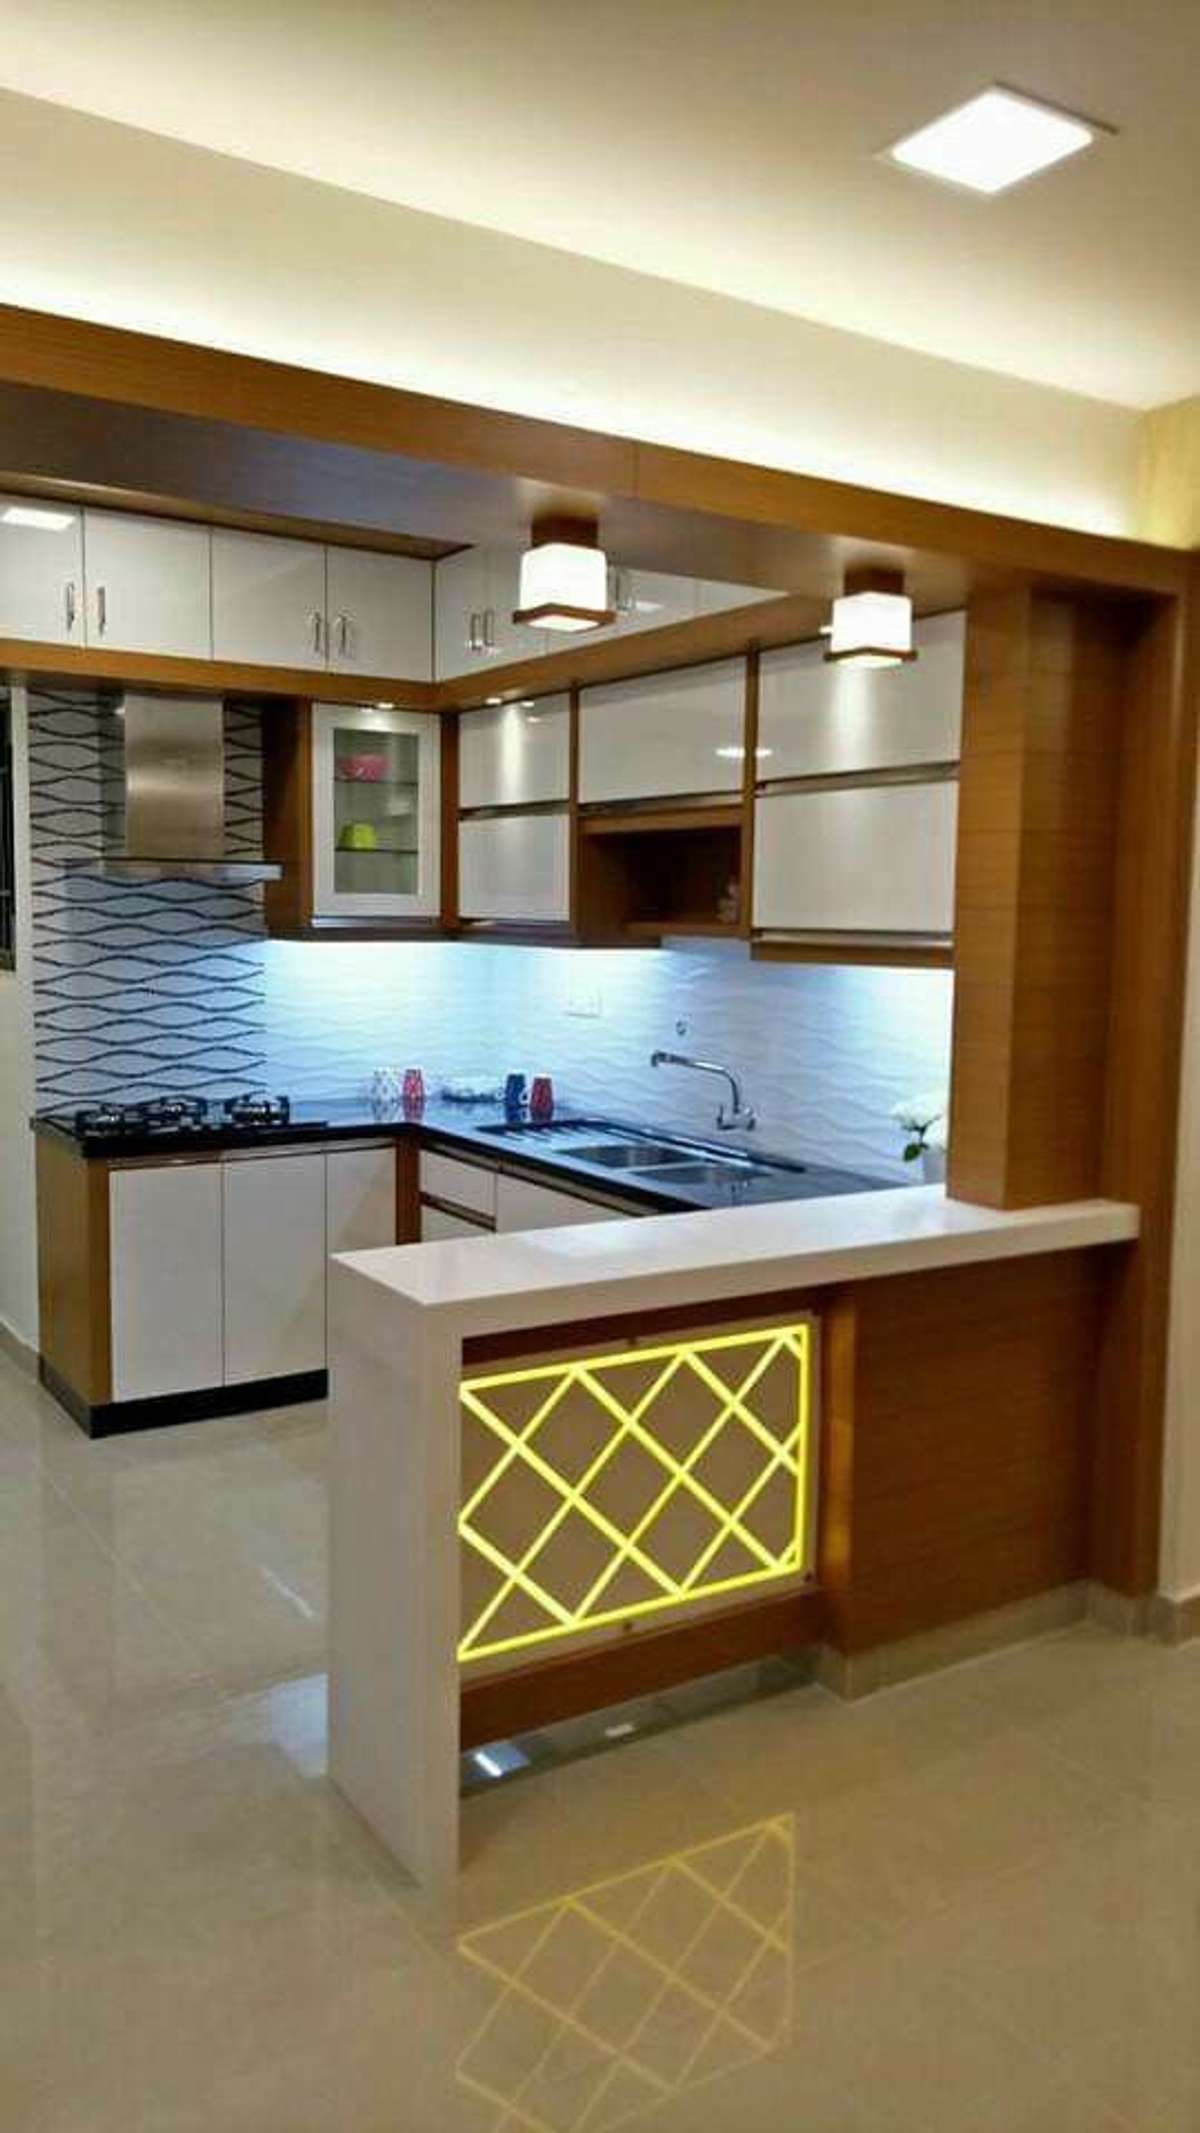 Ceiling, Kitchen, Lighting, Storage Designs by Interior Designer shahul AM, Thrissur | Kolo